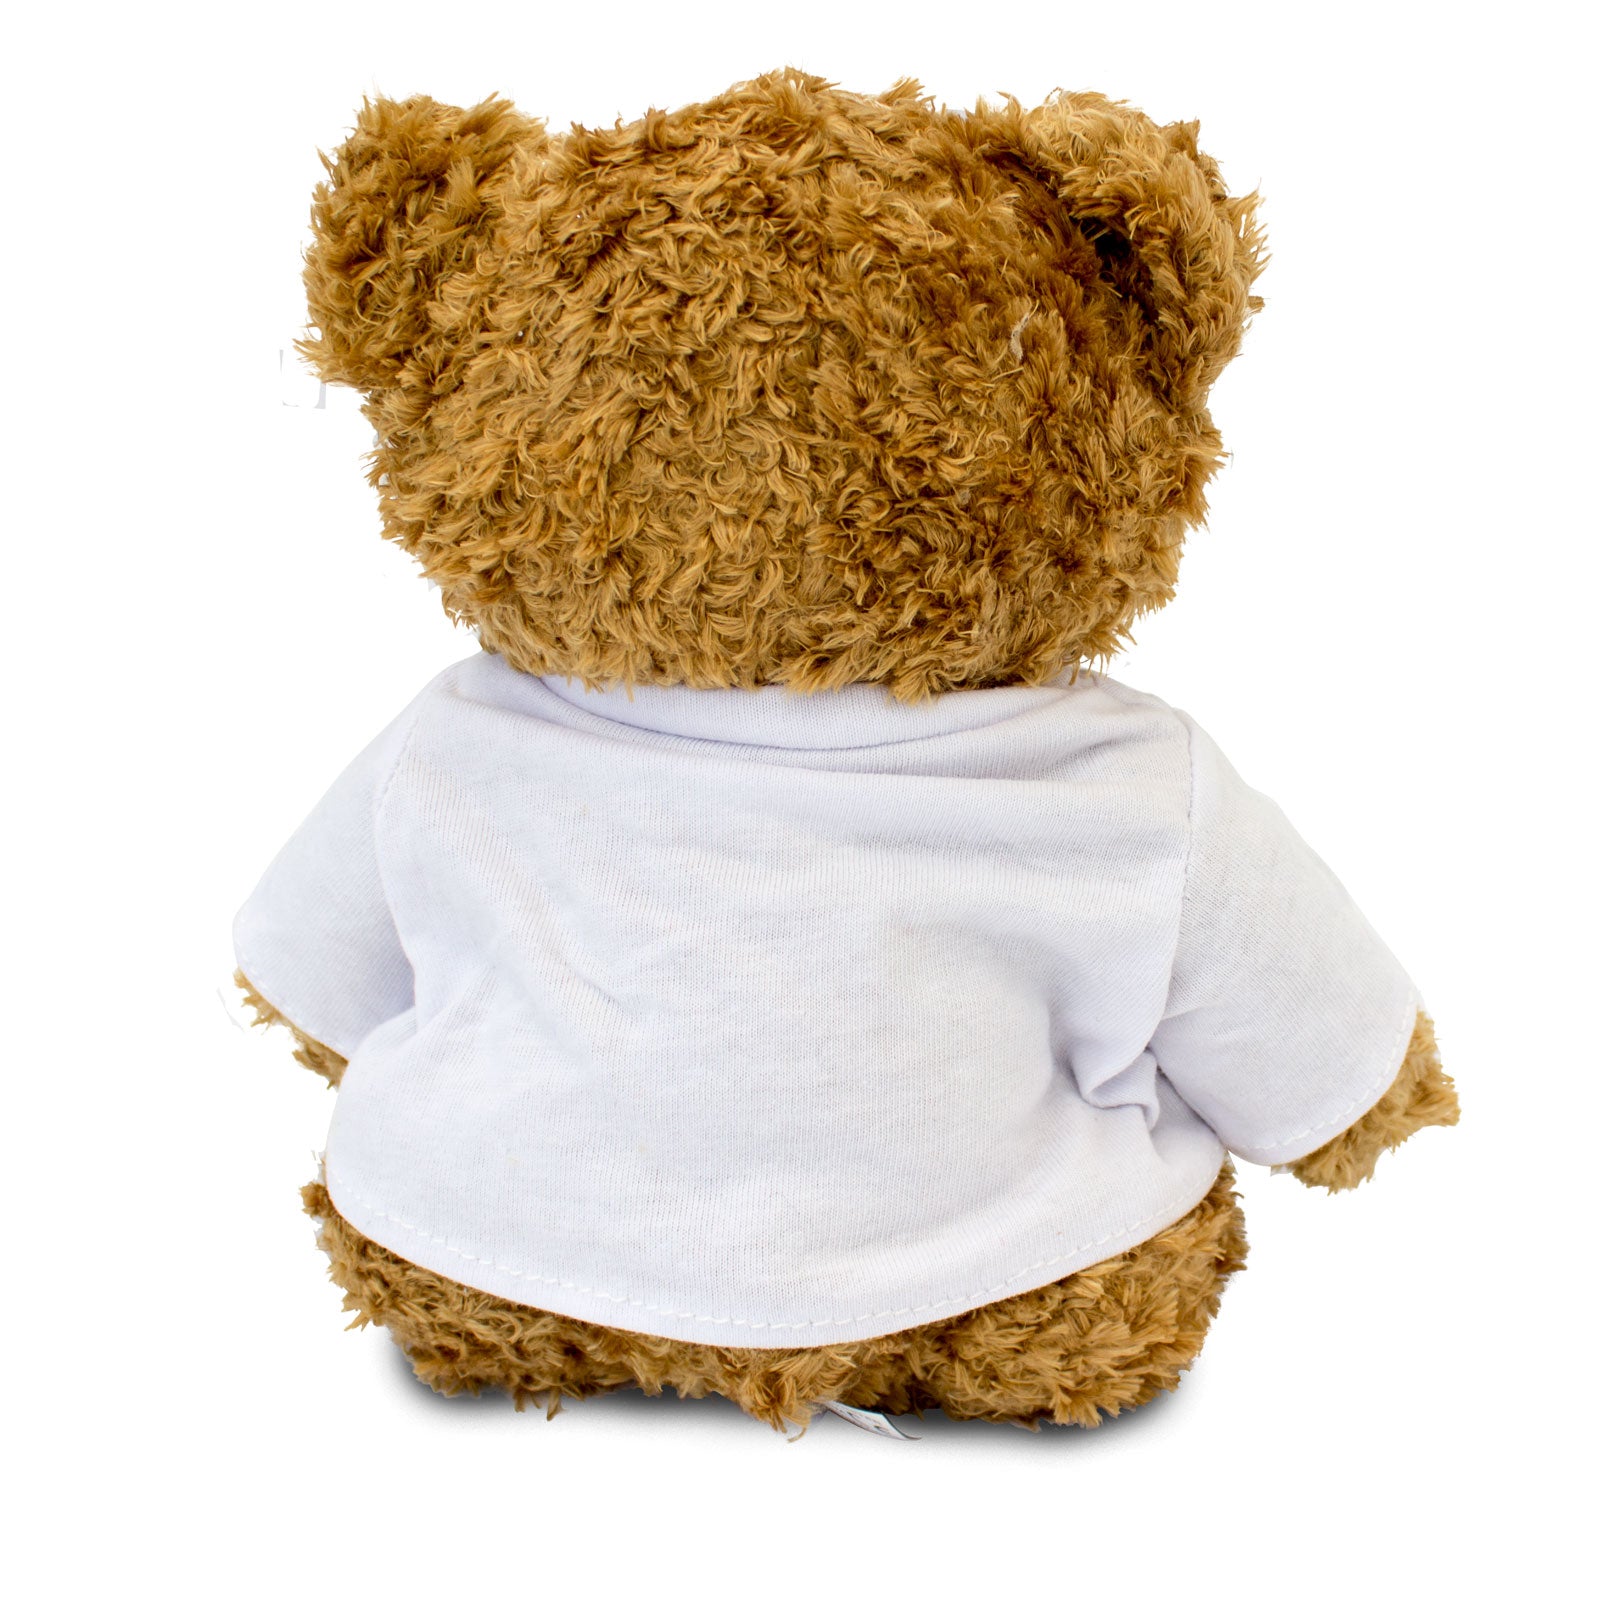 Get Well Soon Jana - Teddy Bear